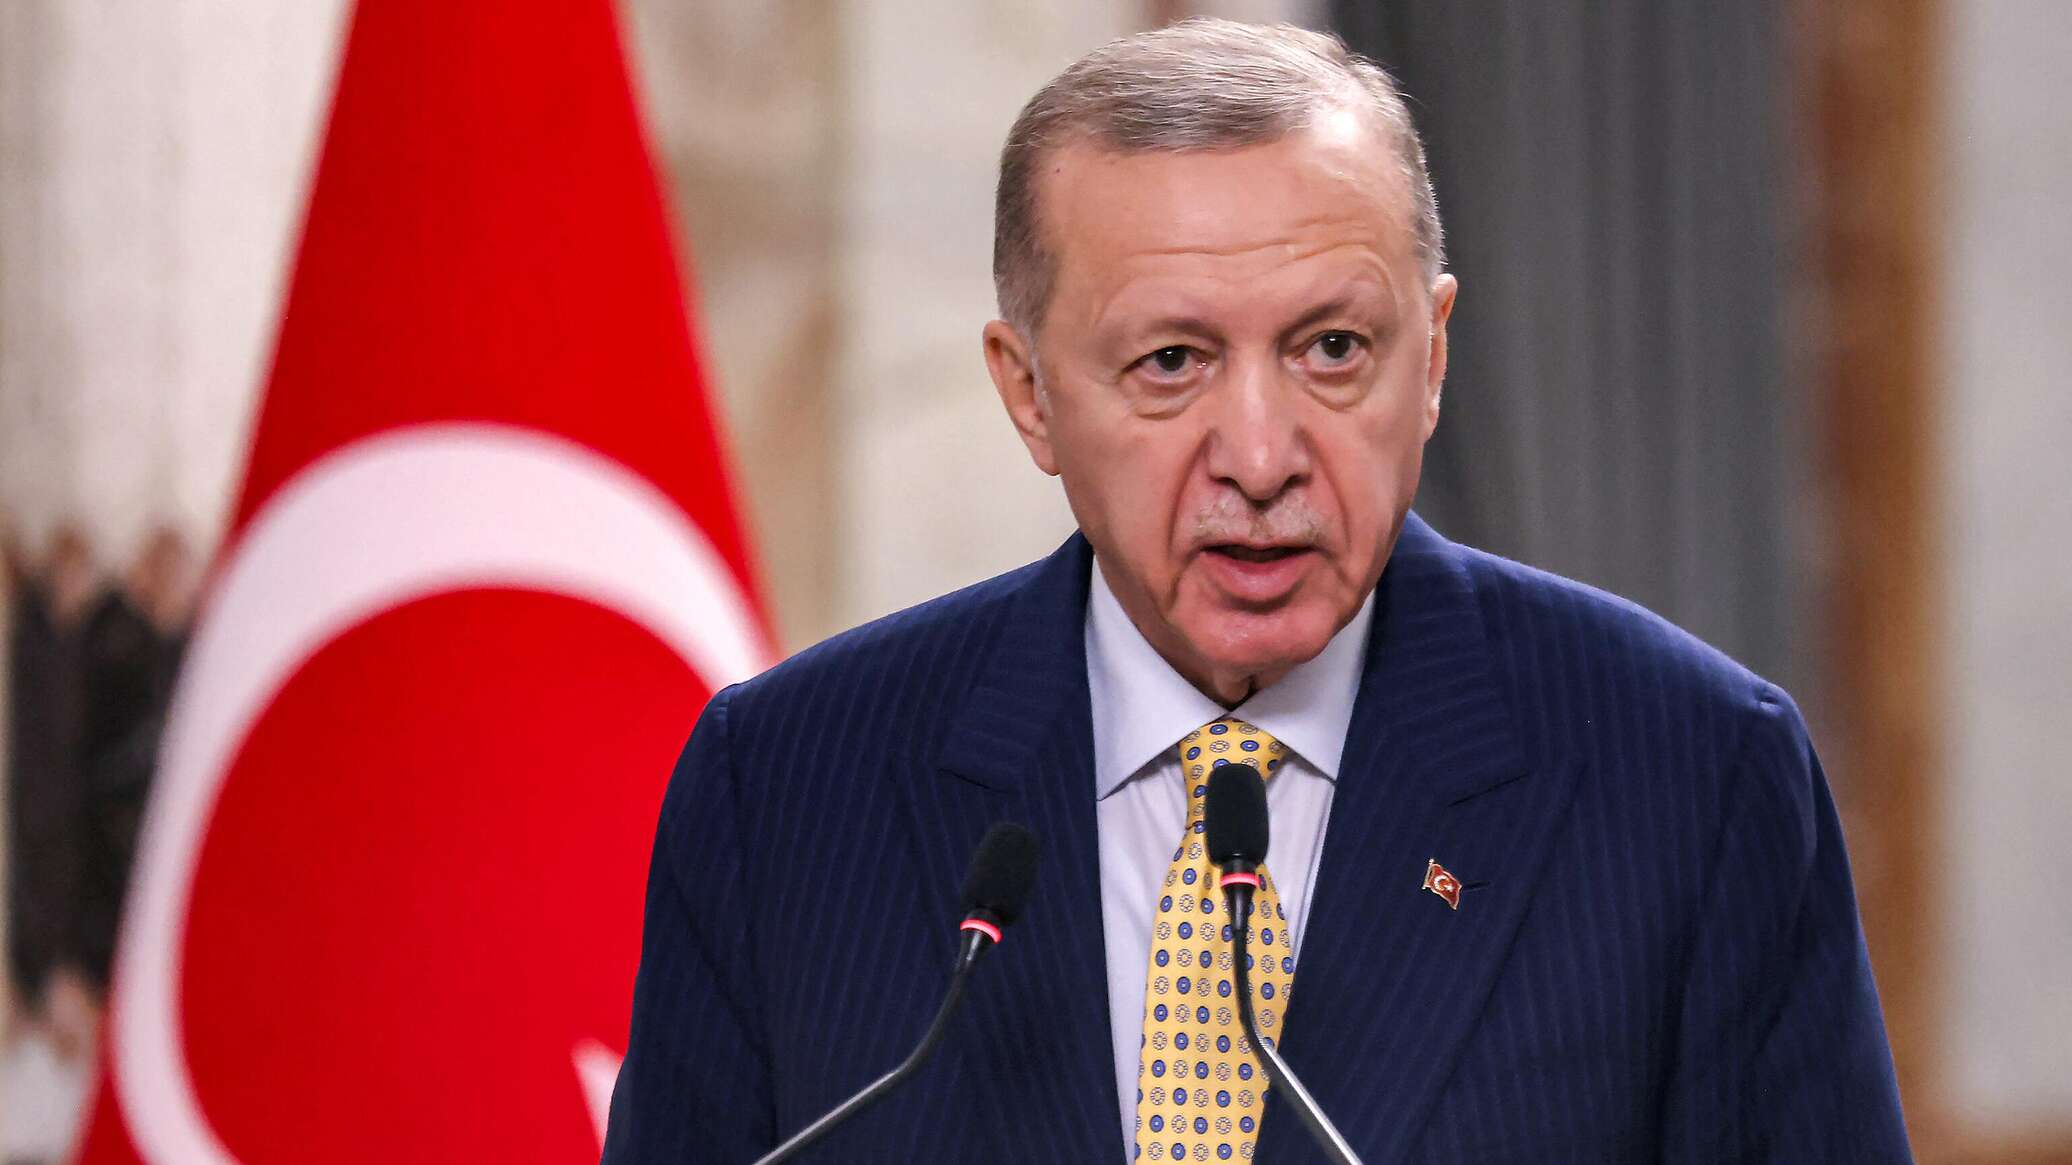 أردوغان: وقف تركيا التجارة مع إسرائيل سيكون مثالا للدول الأخرى التي تشعر بالقلق إزاء الوضع الحالي